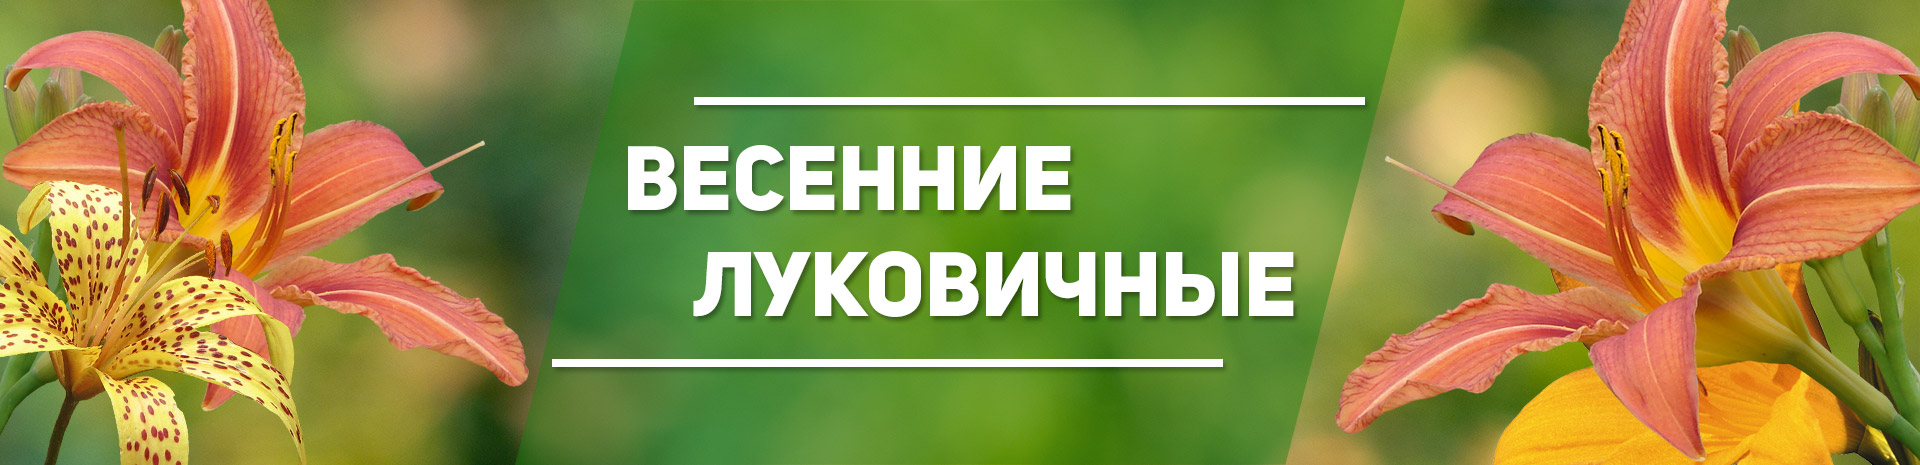 семена почтой интернет магазин семян по россии